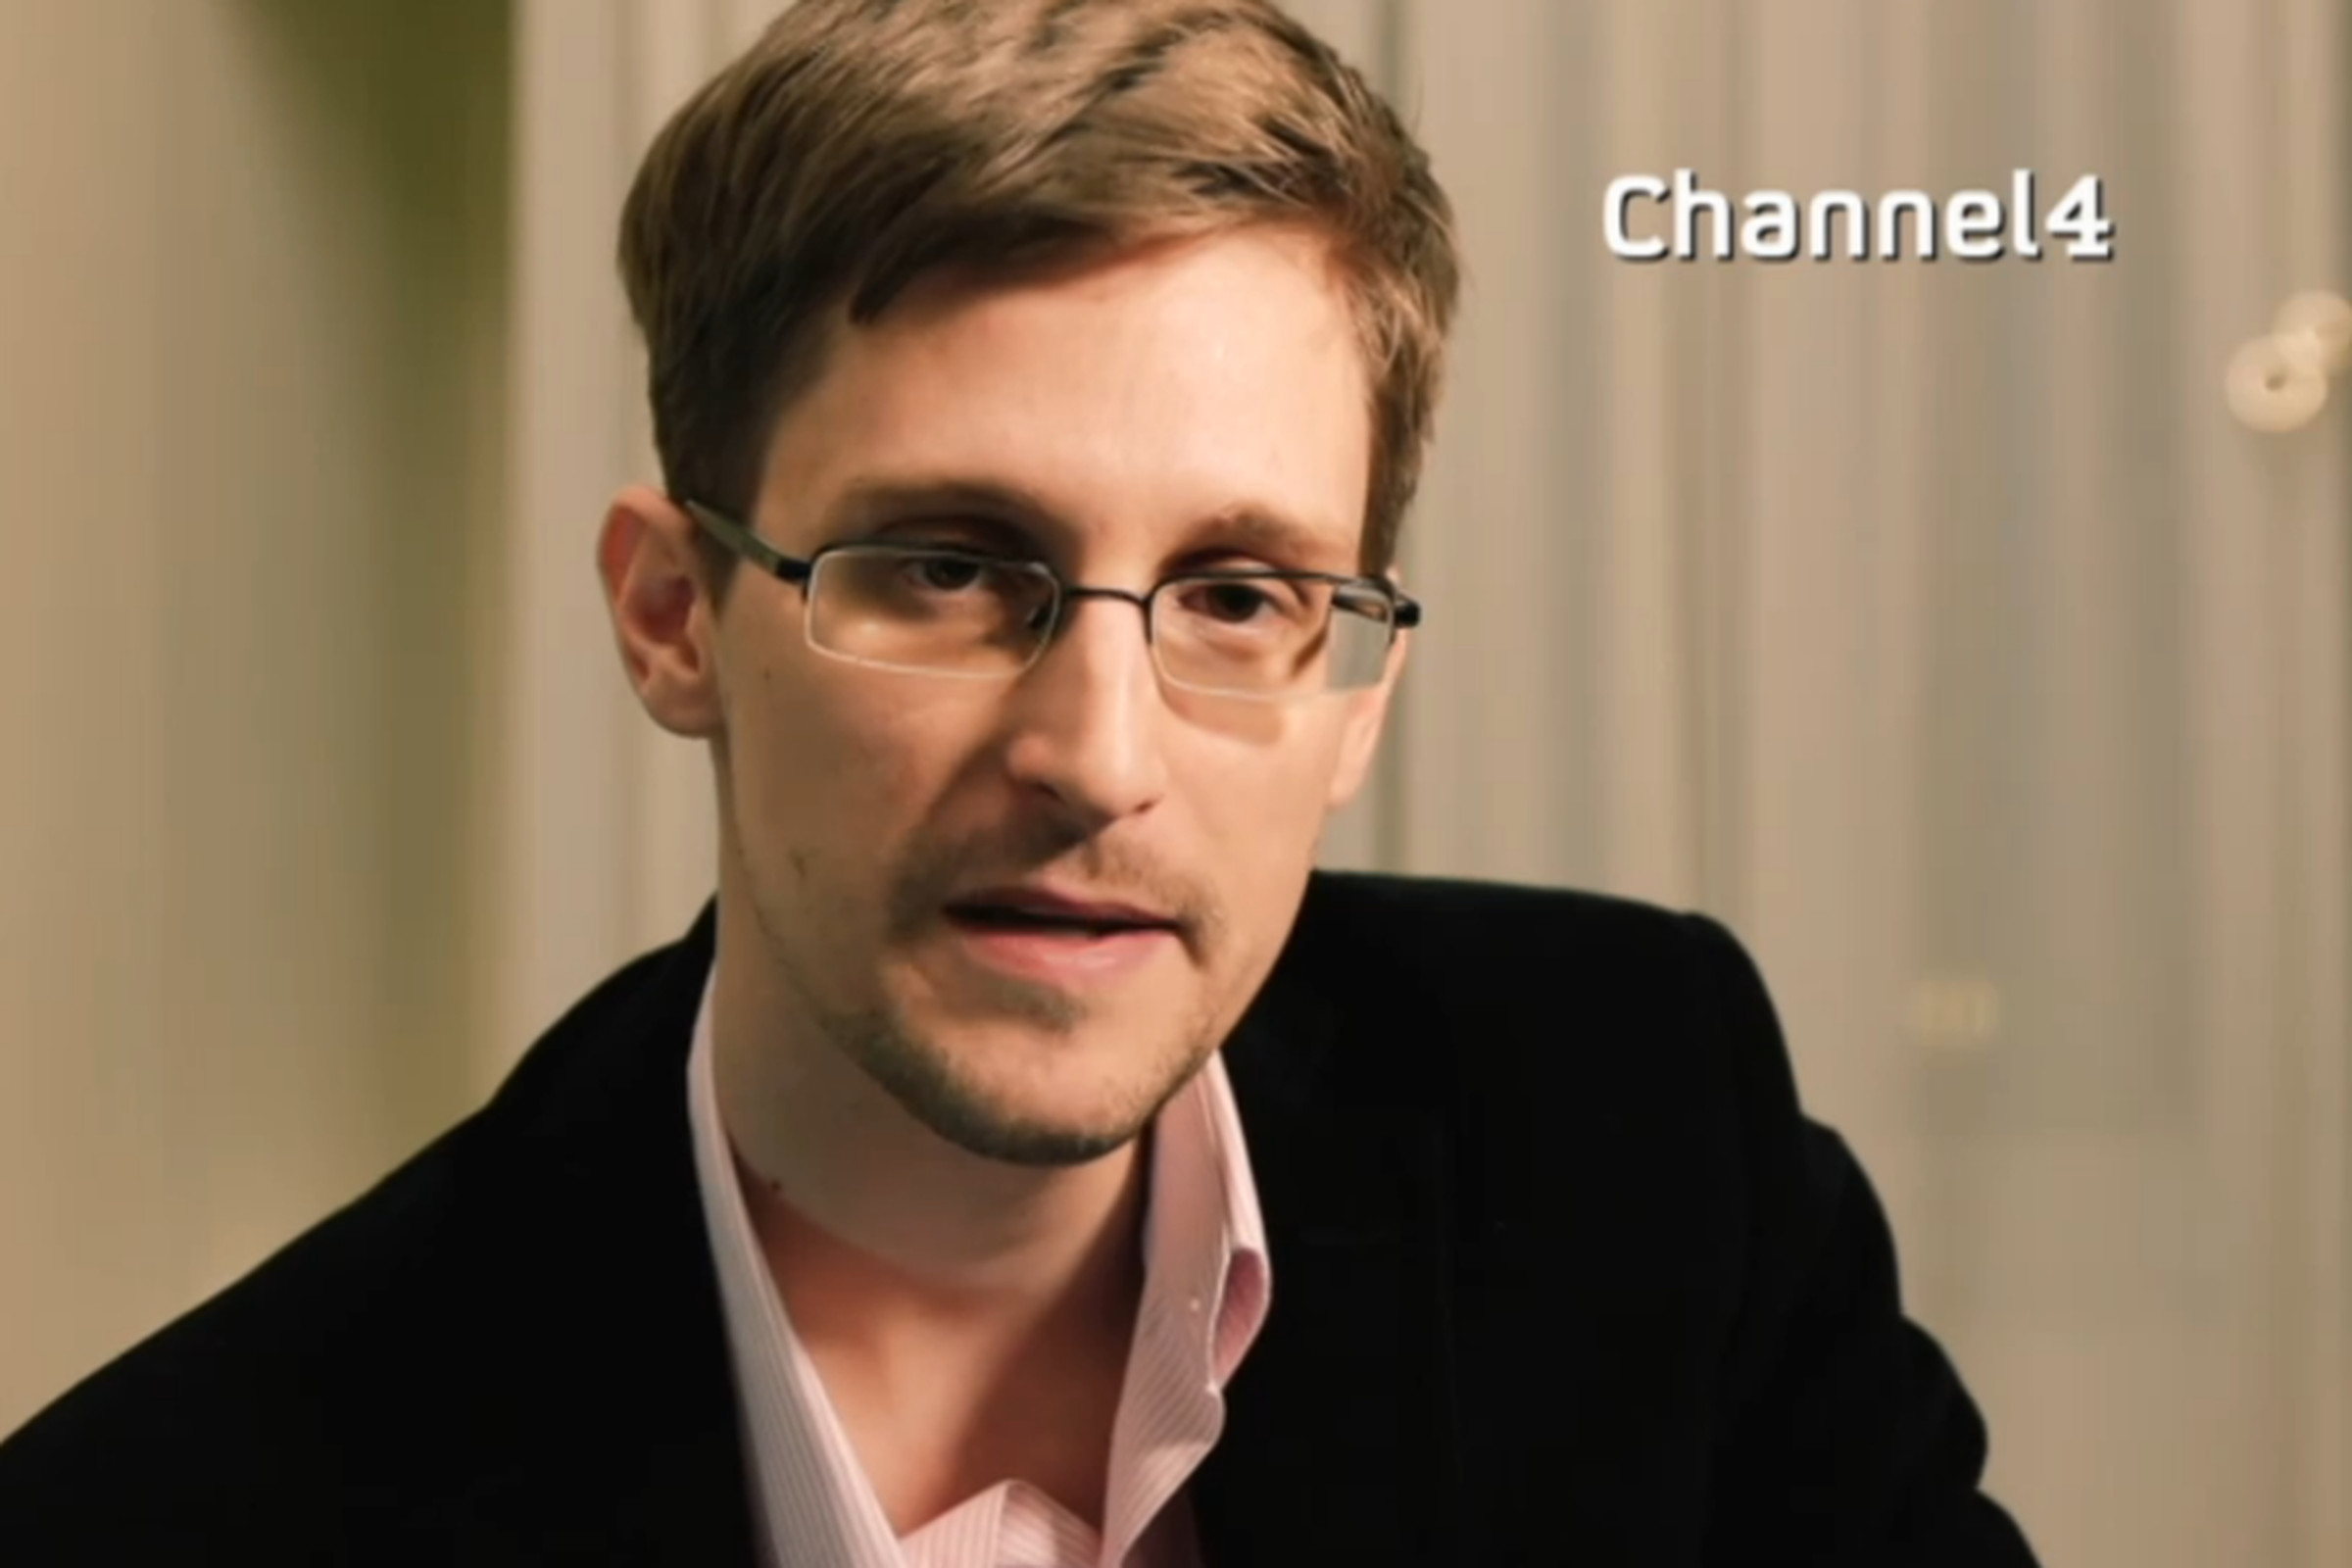 Edward Snowden Channel 4